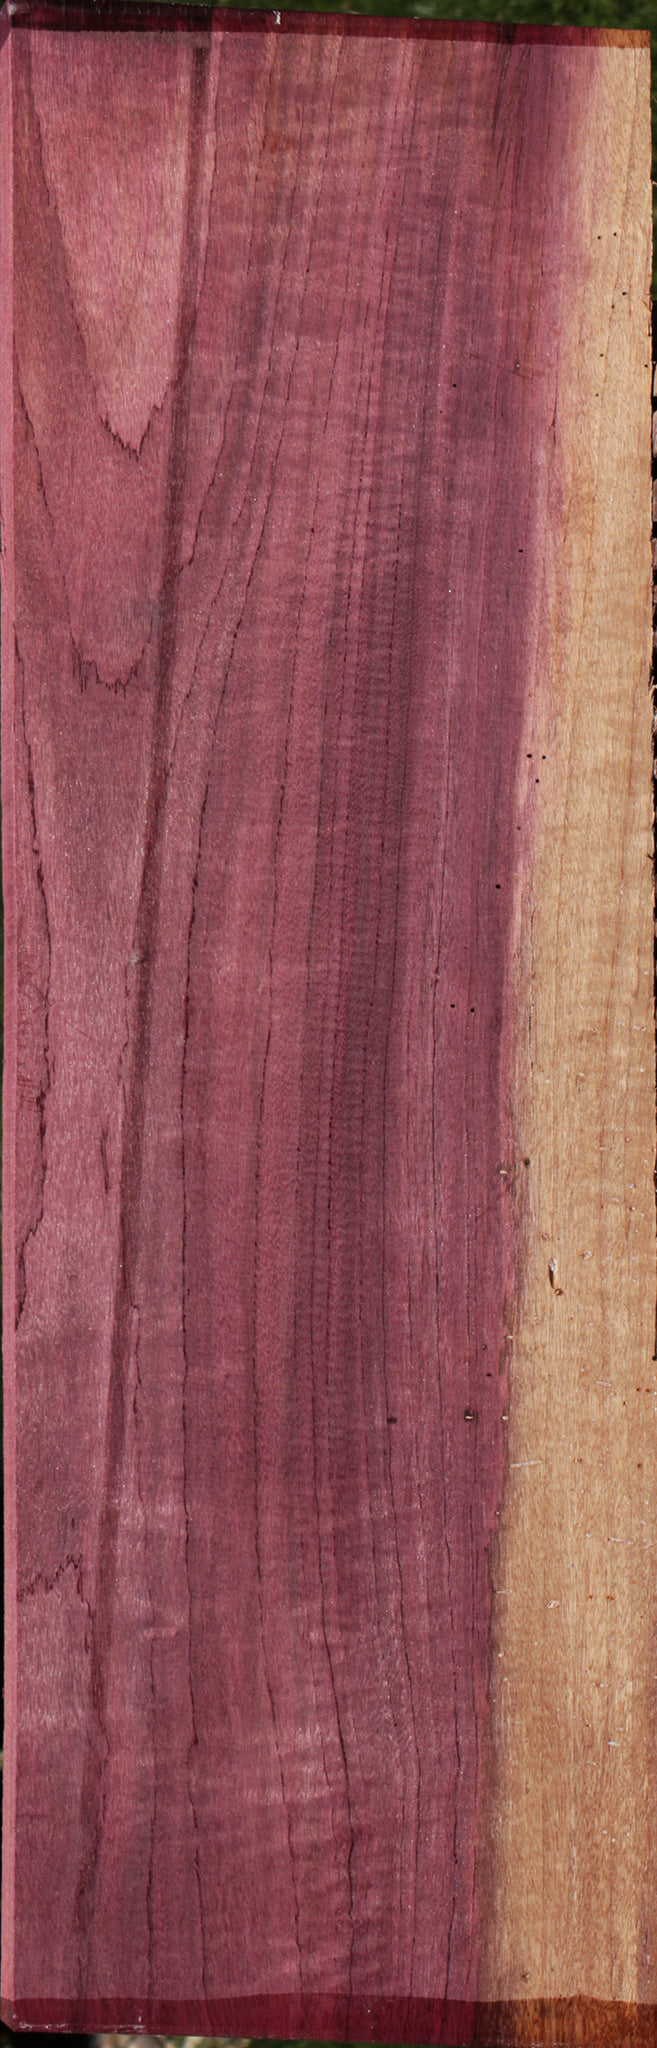 Figured Purpleheart Lumber